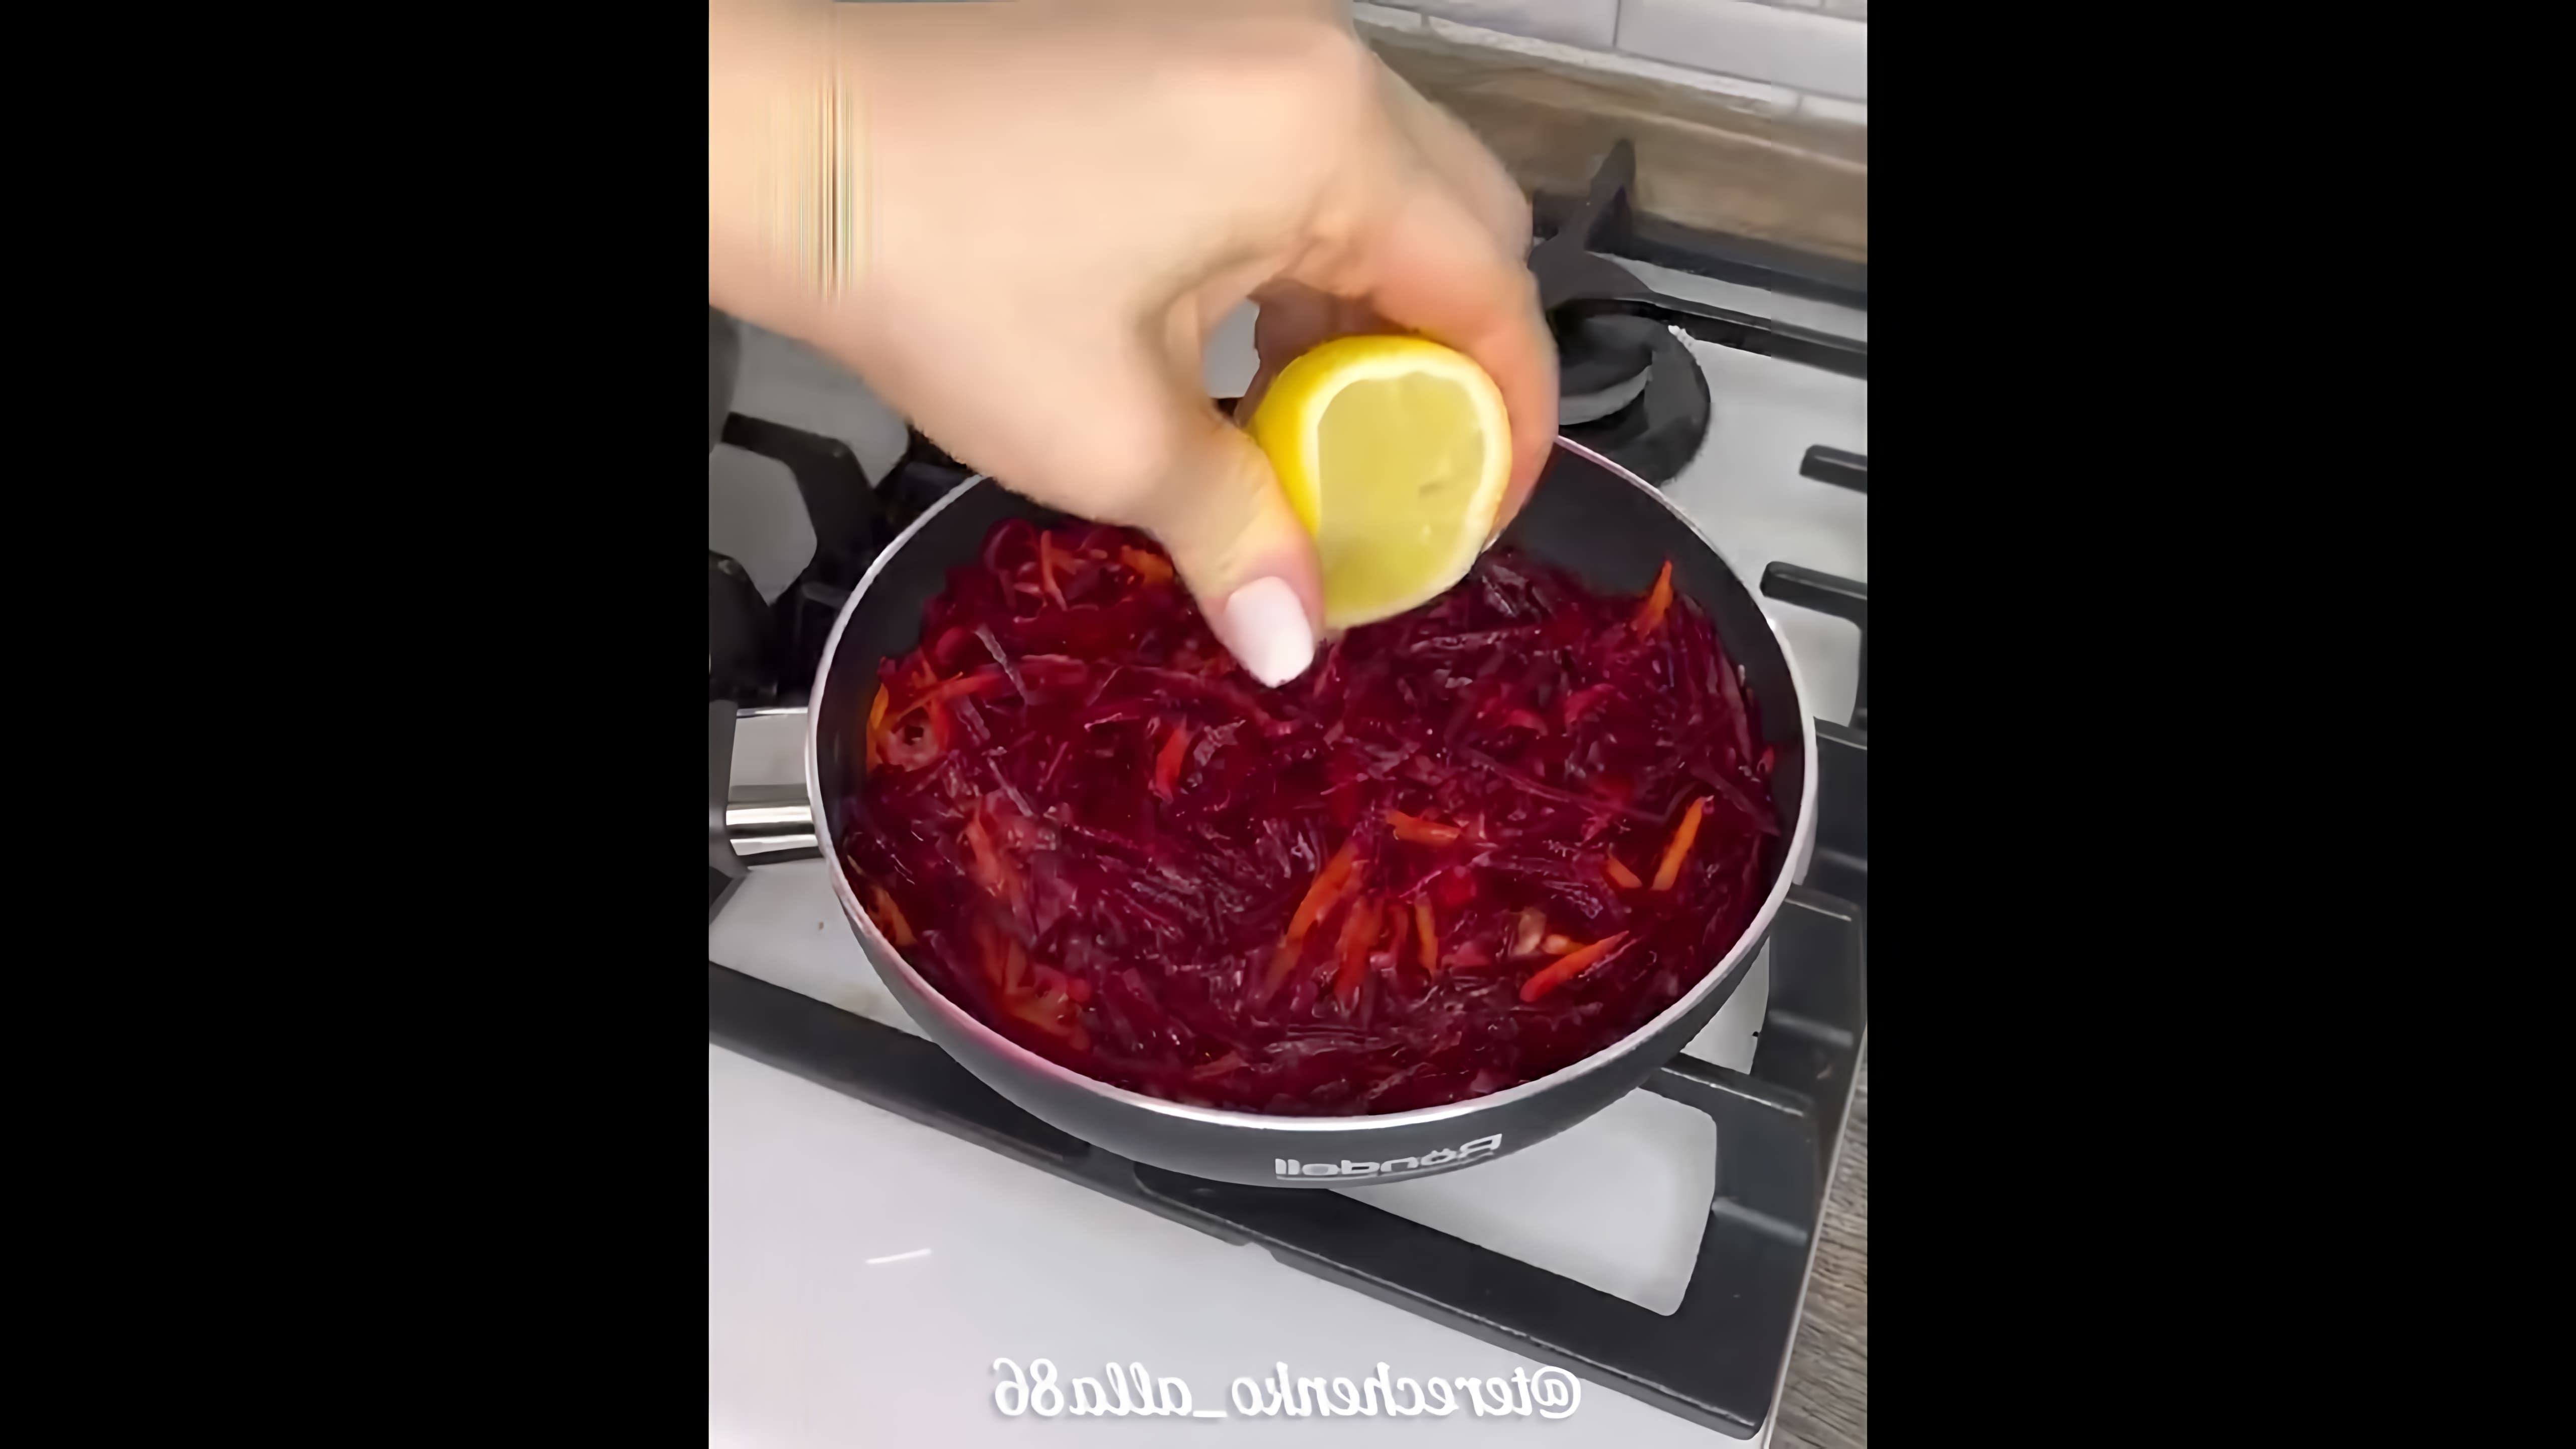 В этом видео демонстрируется процесс приготовления красного наваристого борща, как у мамы